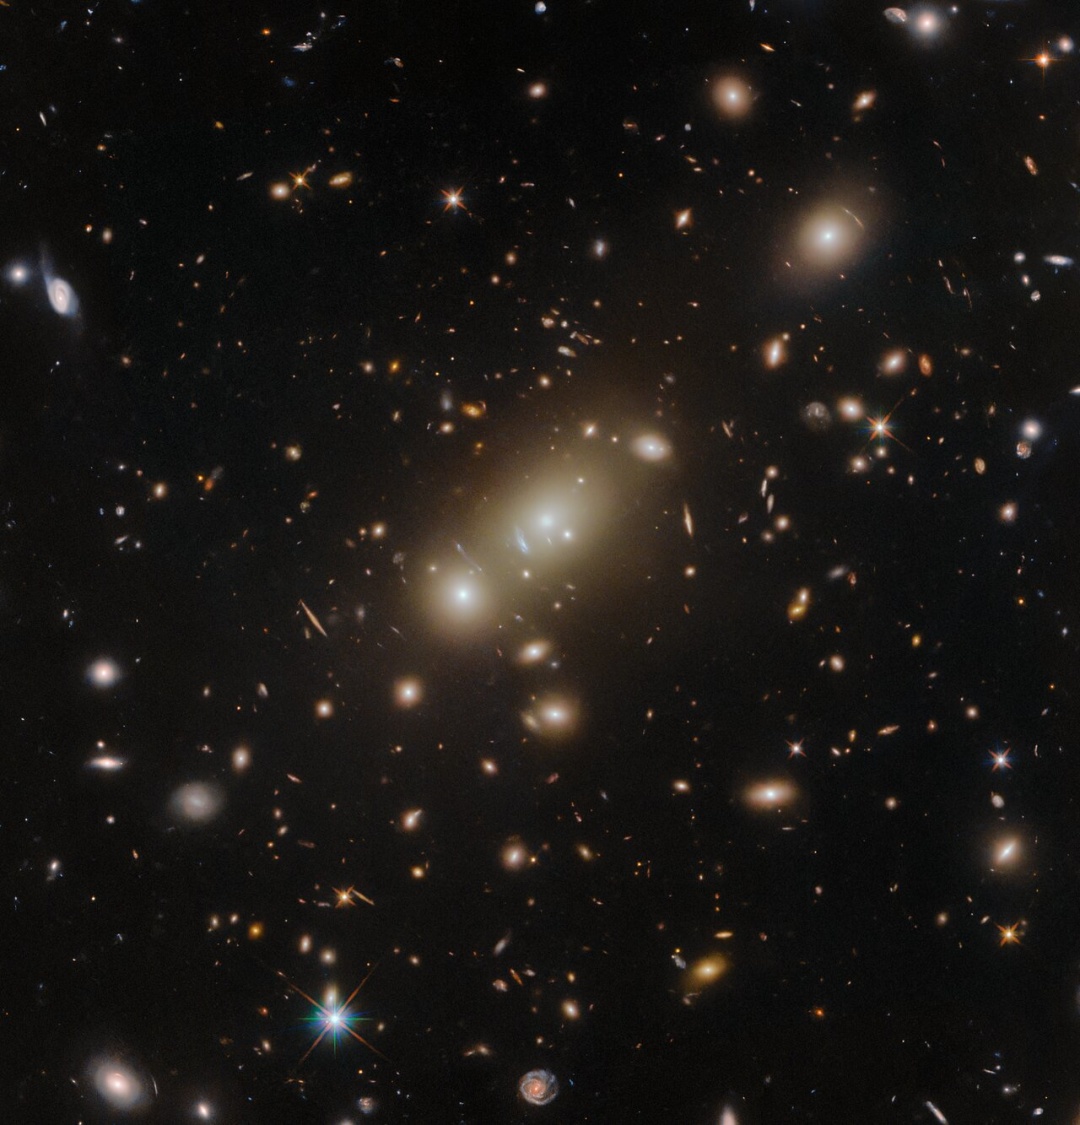 Фото: ESA/Hubble & NASA, H. Ebeling